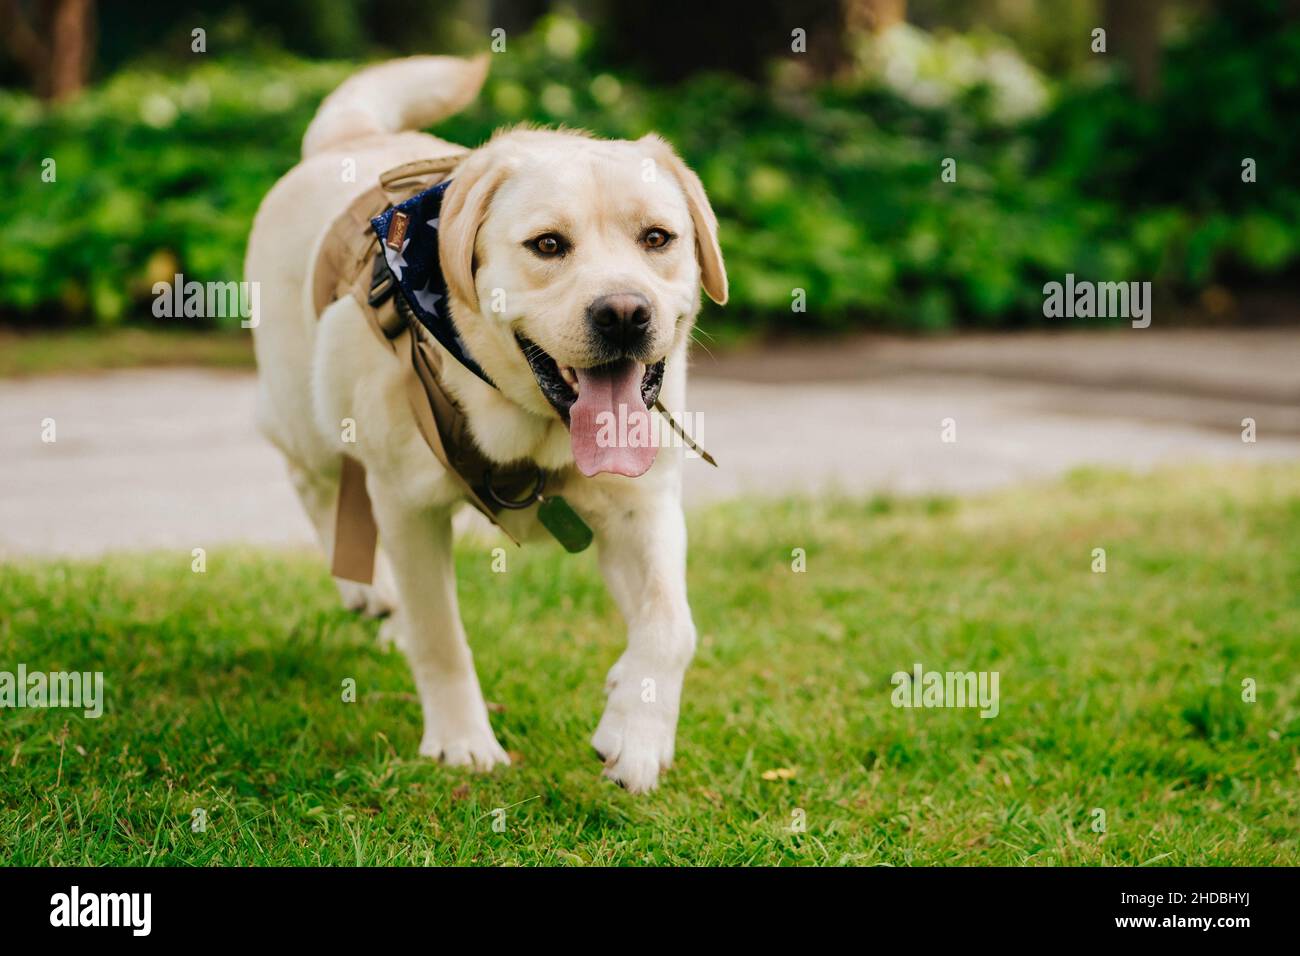 Primo piano di un adorabile cane Labrador Retriever con la lingua che si aggetta all'esterno in un parco all'aperto Foto Stock